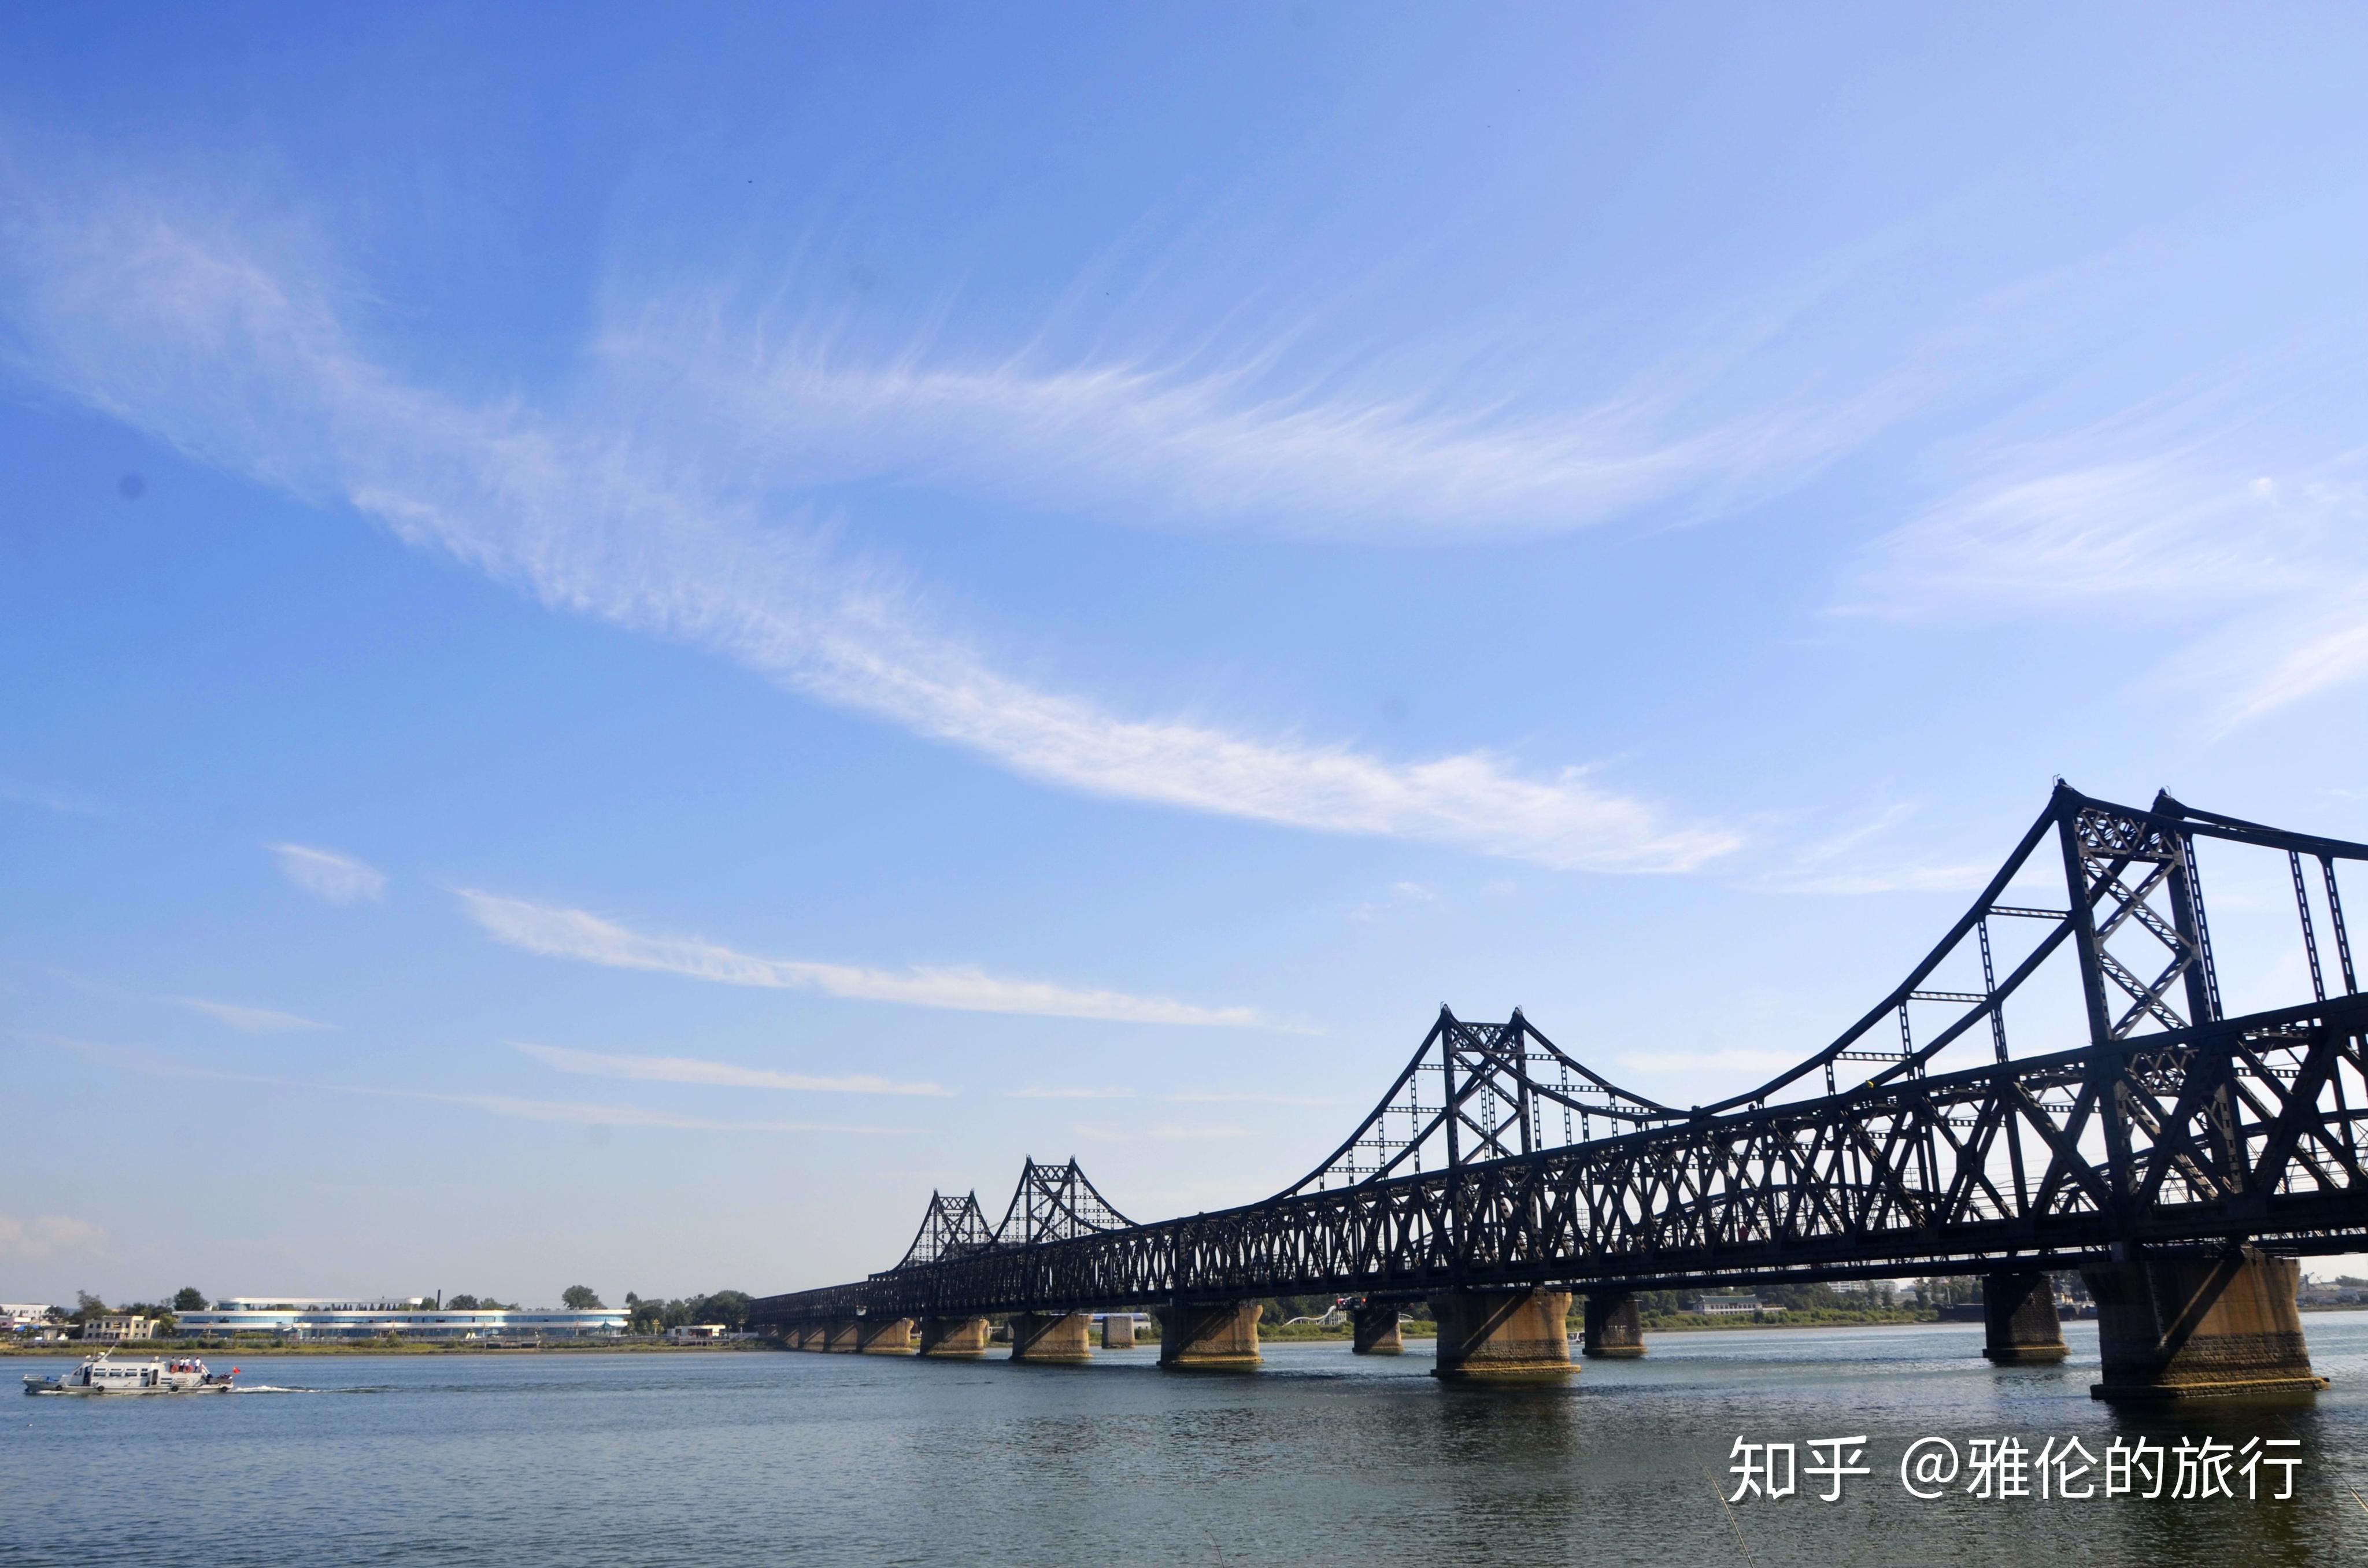 【携程攻略】丹东鸭绿江断桥景点,鸭绿江断桥是丹东的标志性景点之一，它紧挨着鸭绿江大桥，是日本殖民…